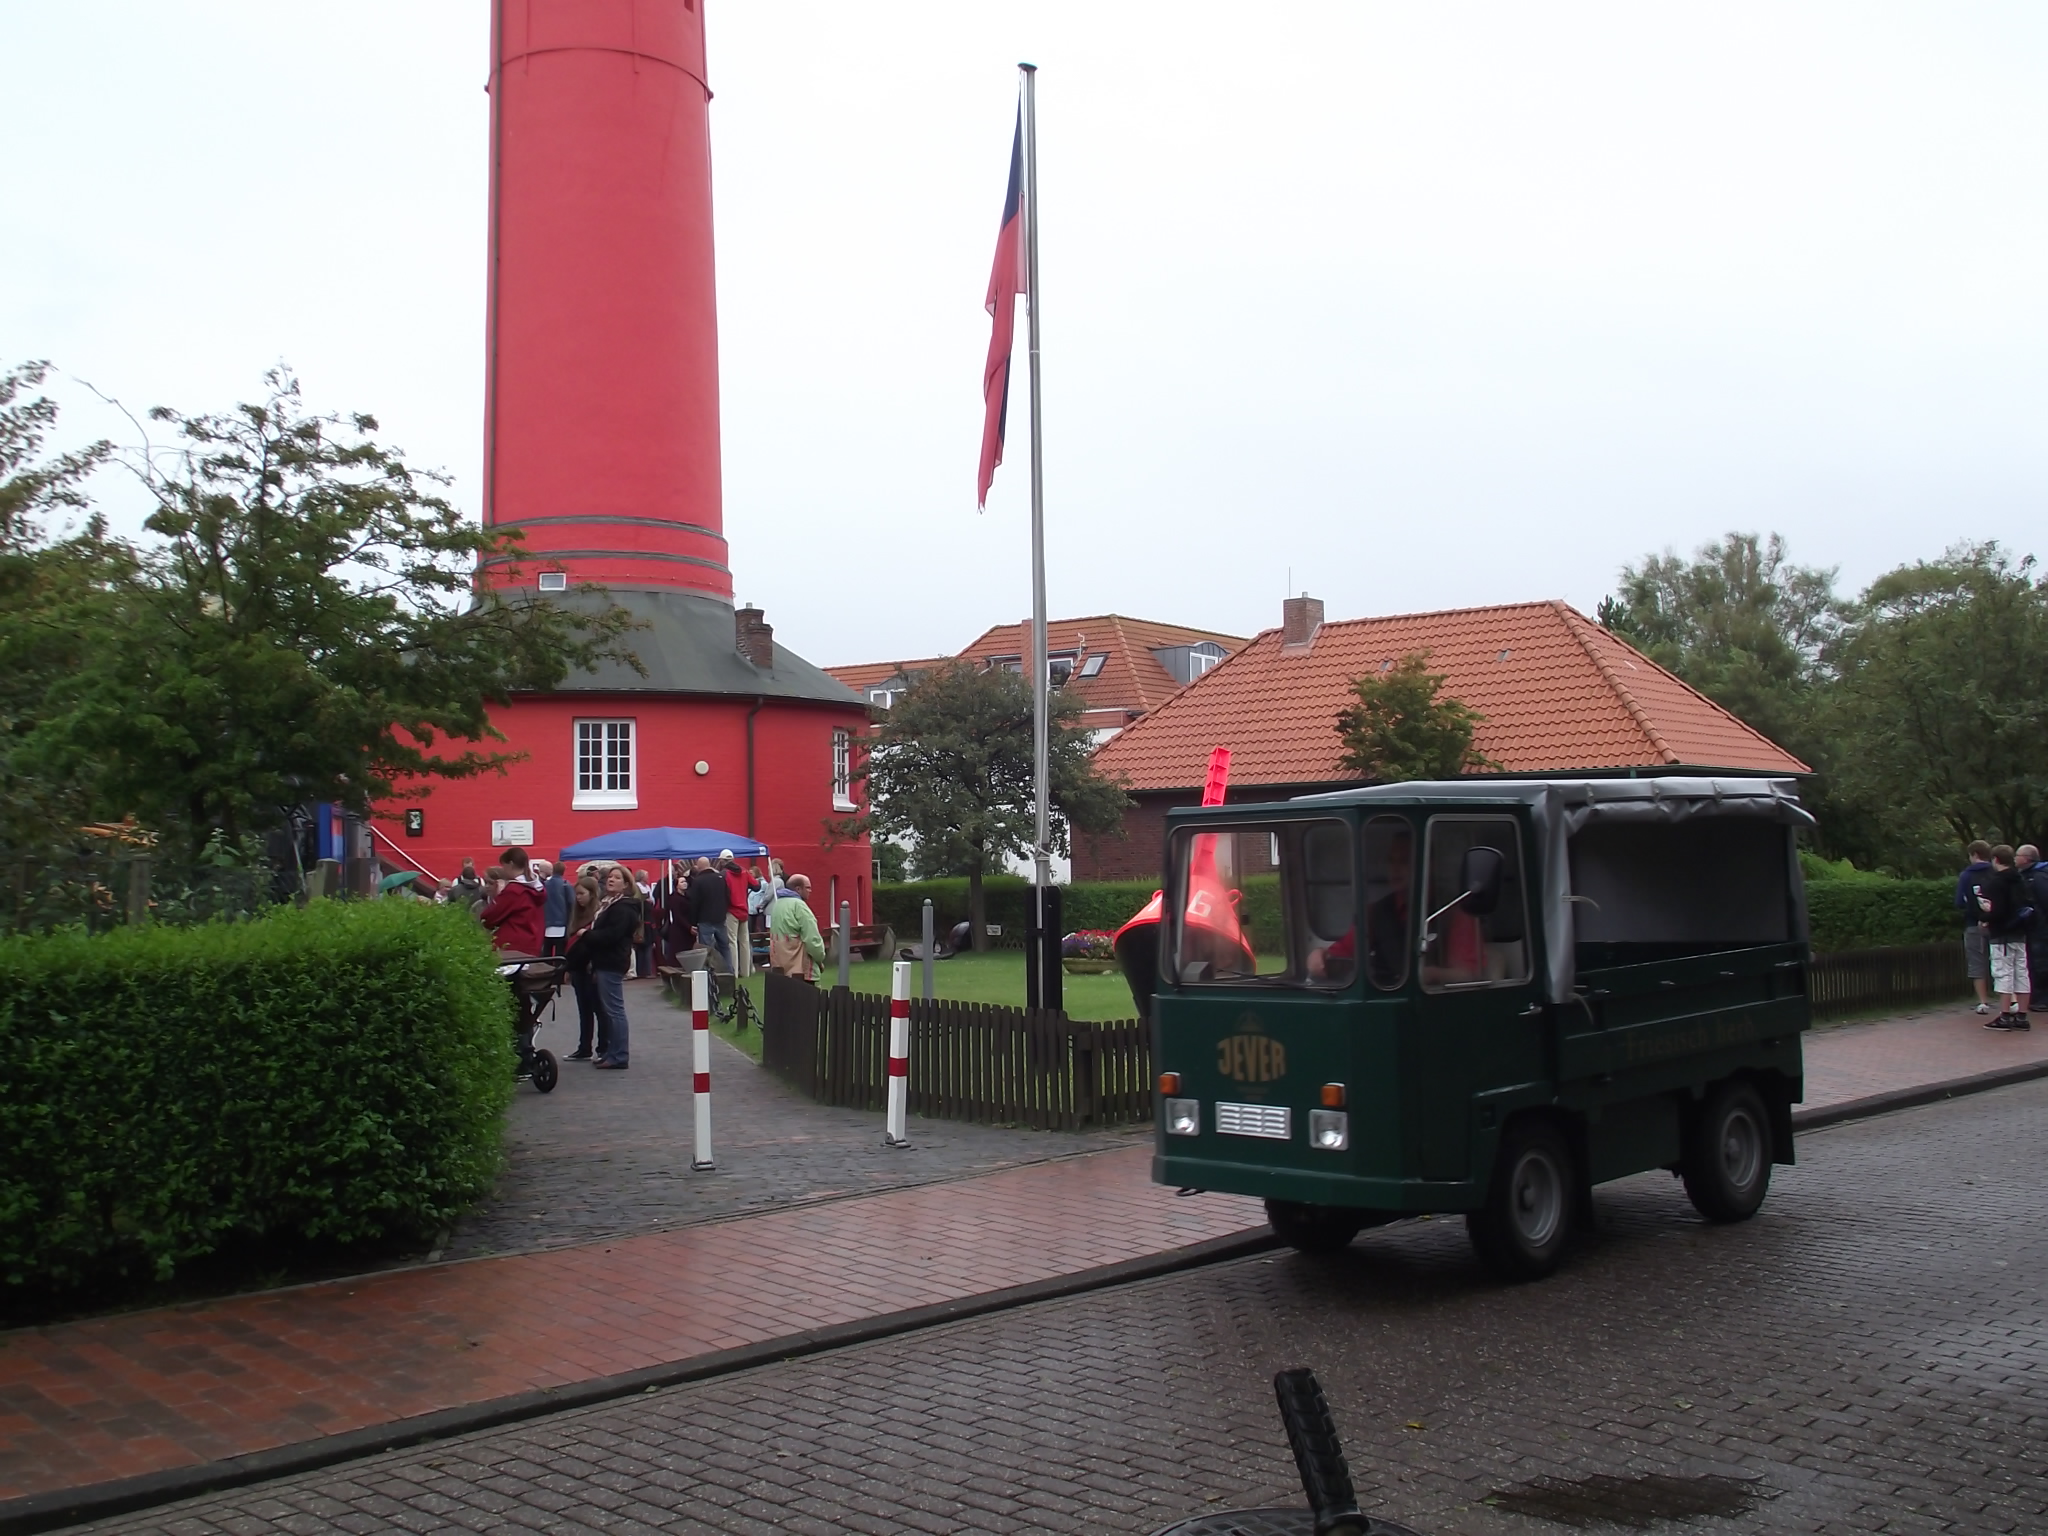 Der alte Leuchtturm von Wangerooge - Trauung Nummer 2, die wir heute gesehen haben. Das Brautpaar ist noch drin, die anderen Gäste warten schon. Glückwunsch von mir!